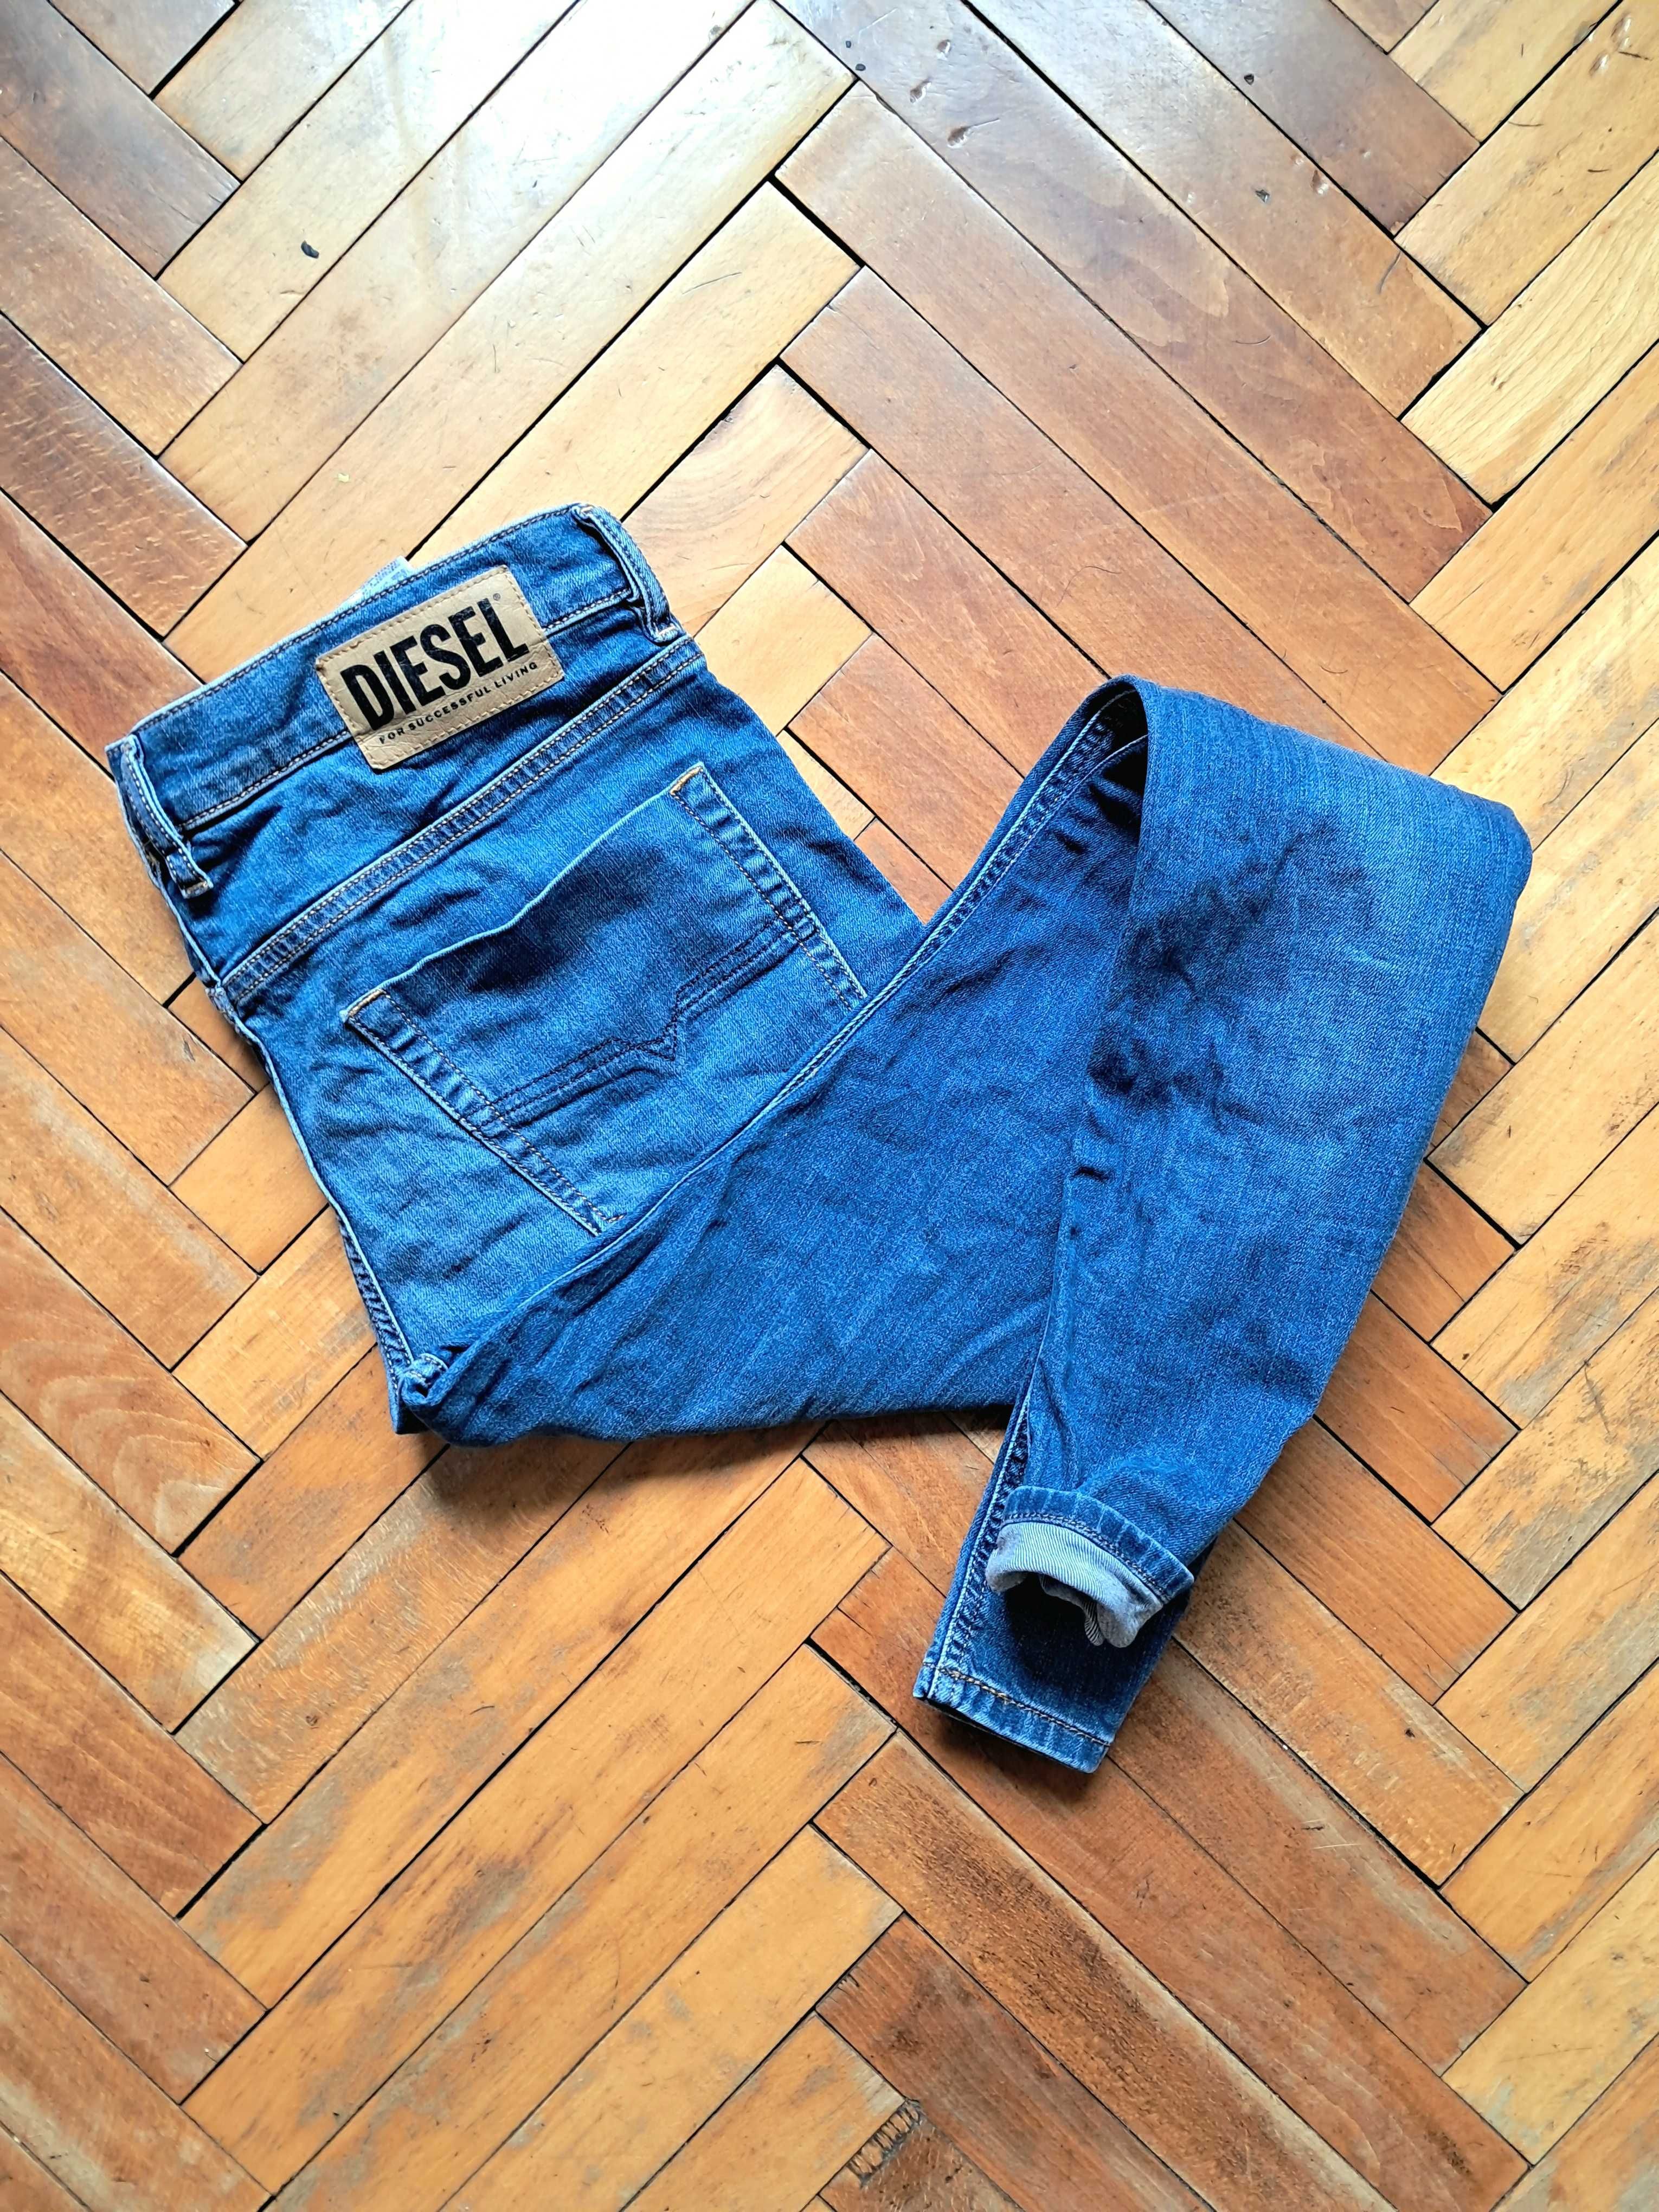 32х32 DIESEL оригінальні джинси / джинсы дизель левайс ед харди M